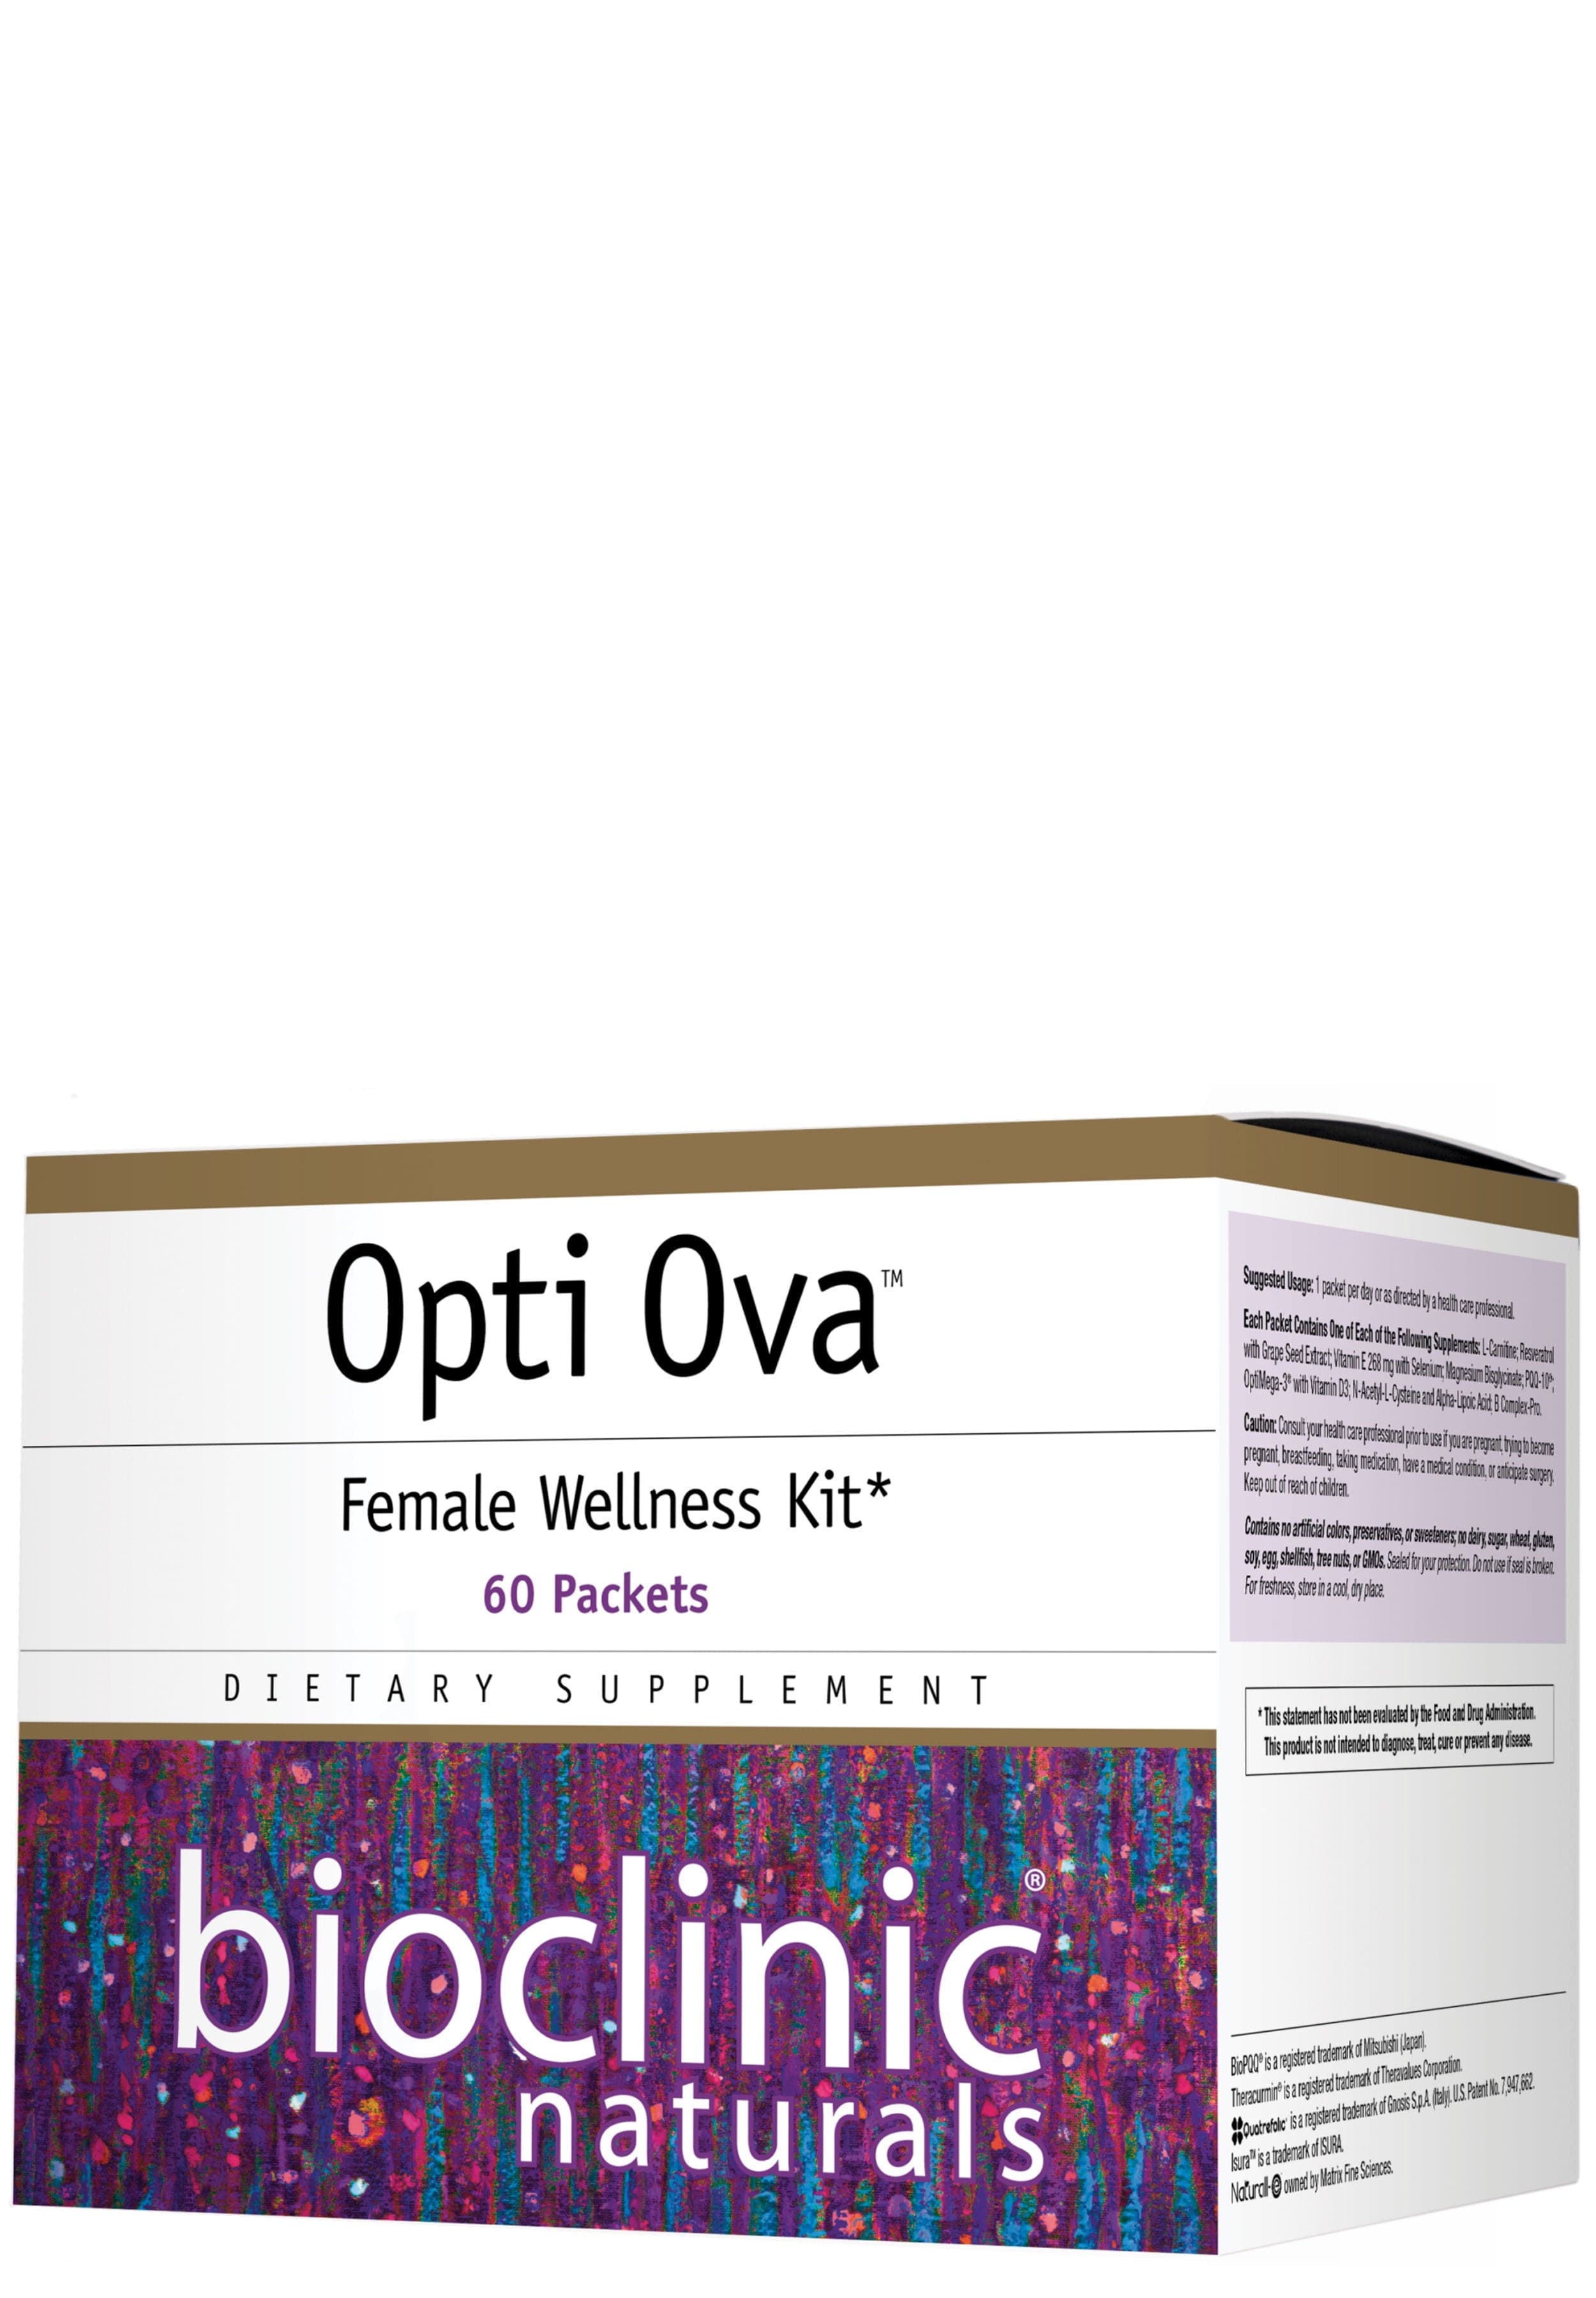 Bioclinic Naturals Opti Ova Female Wellness Kit